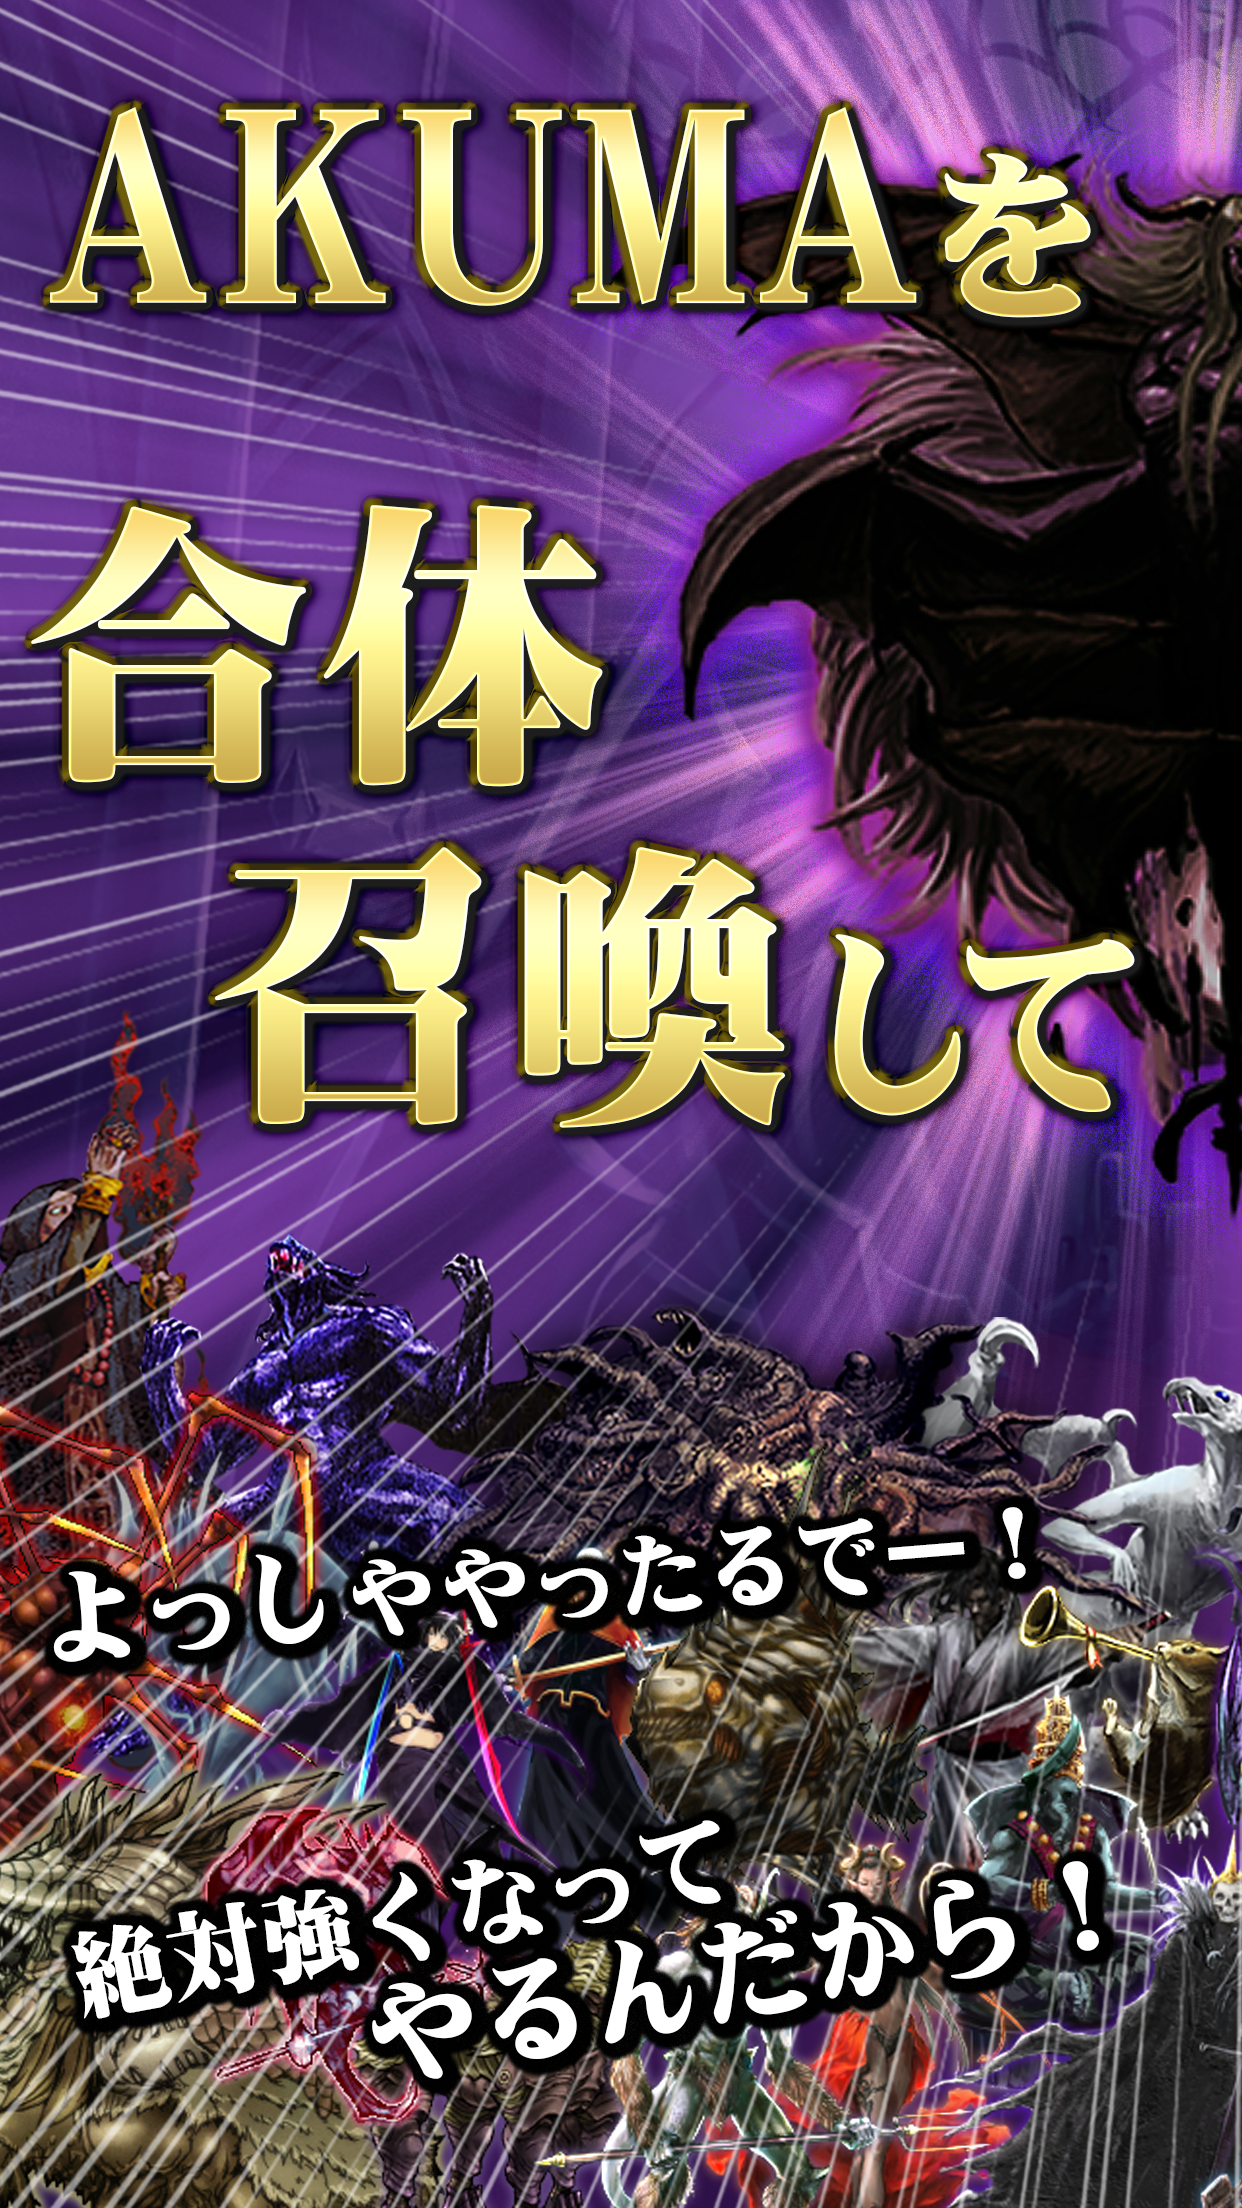 Screenshot 1 of AKUMA Taisen - Devil Fusion Summon - Dämonenkönig, der dunkles Idle-Spiel erweckt 1.0.7